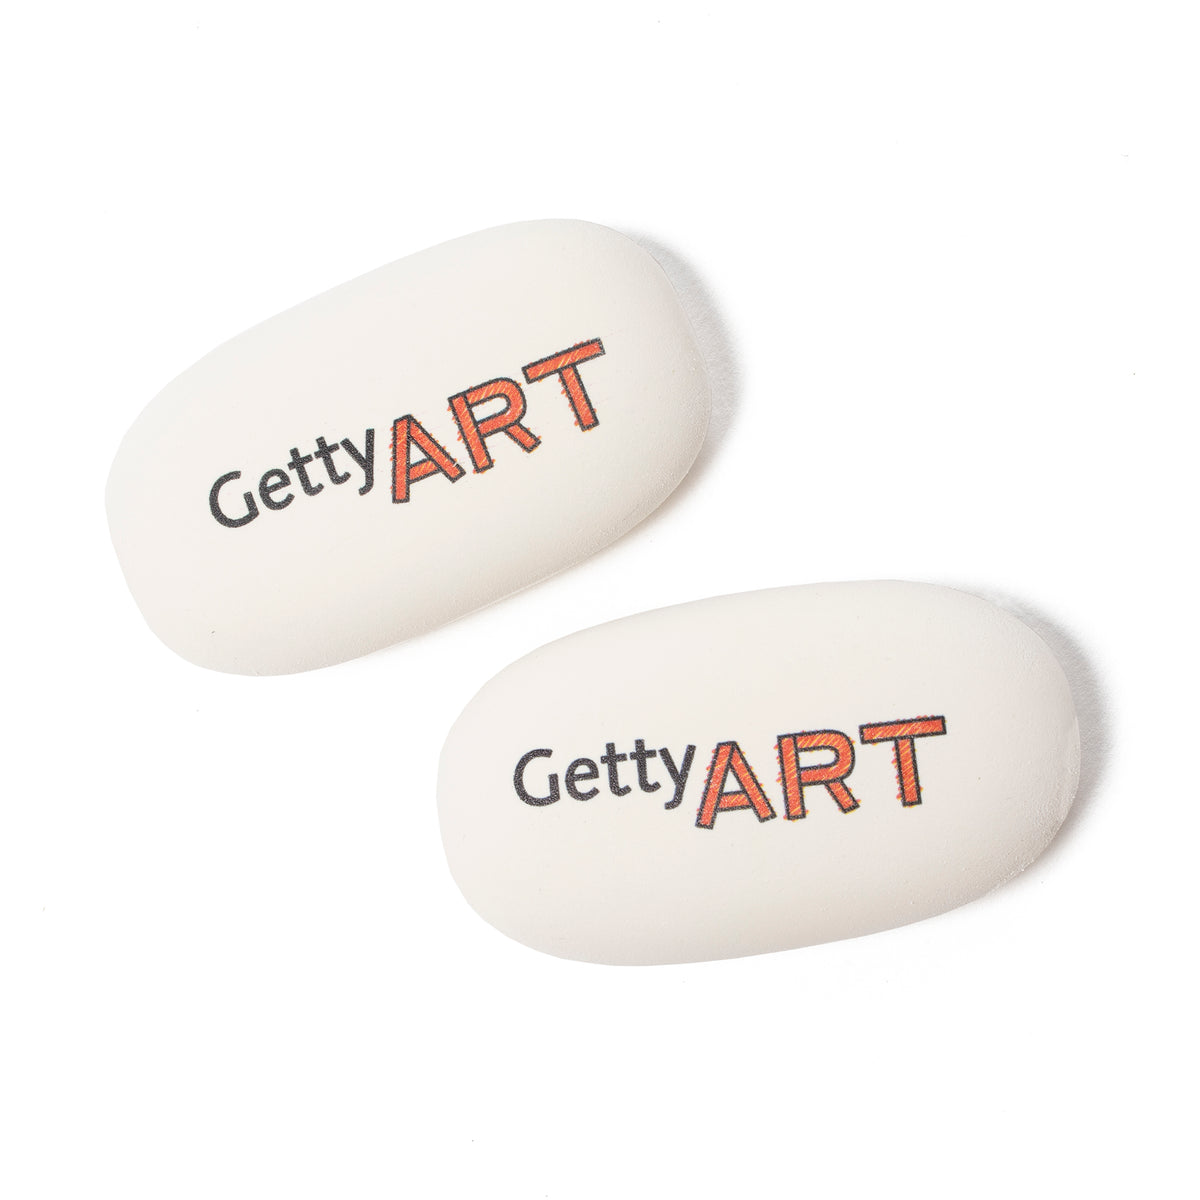 Getty Art Oval Eraser